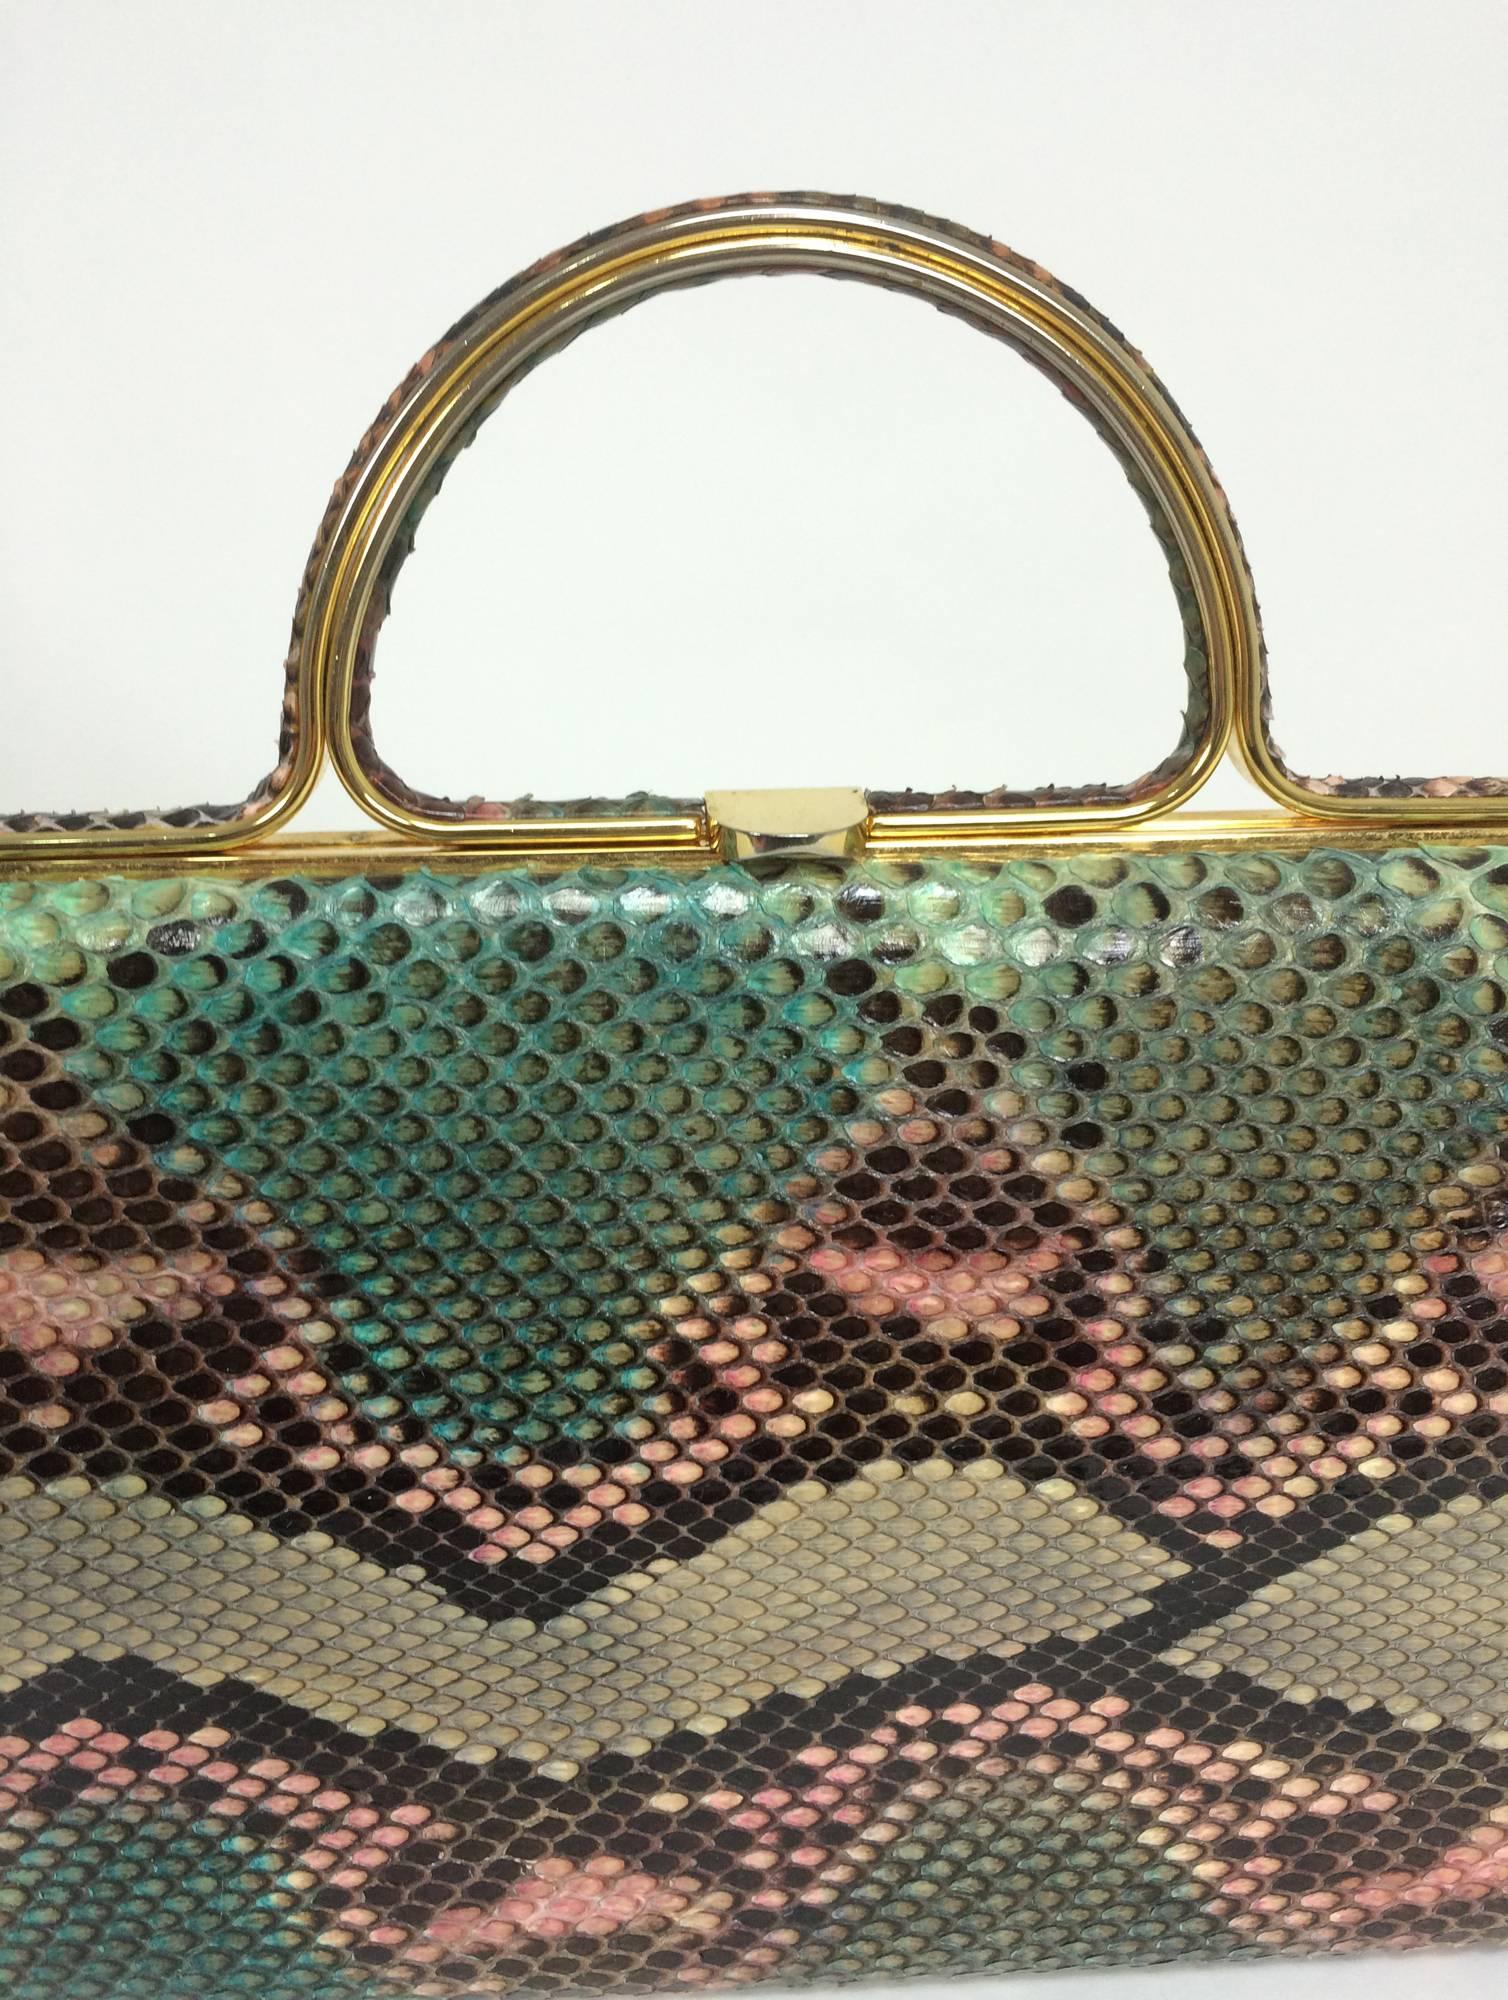 Gray Judith Leiber pink & green snakeskin frame handbag